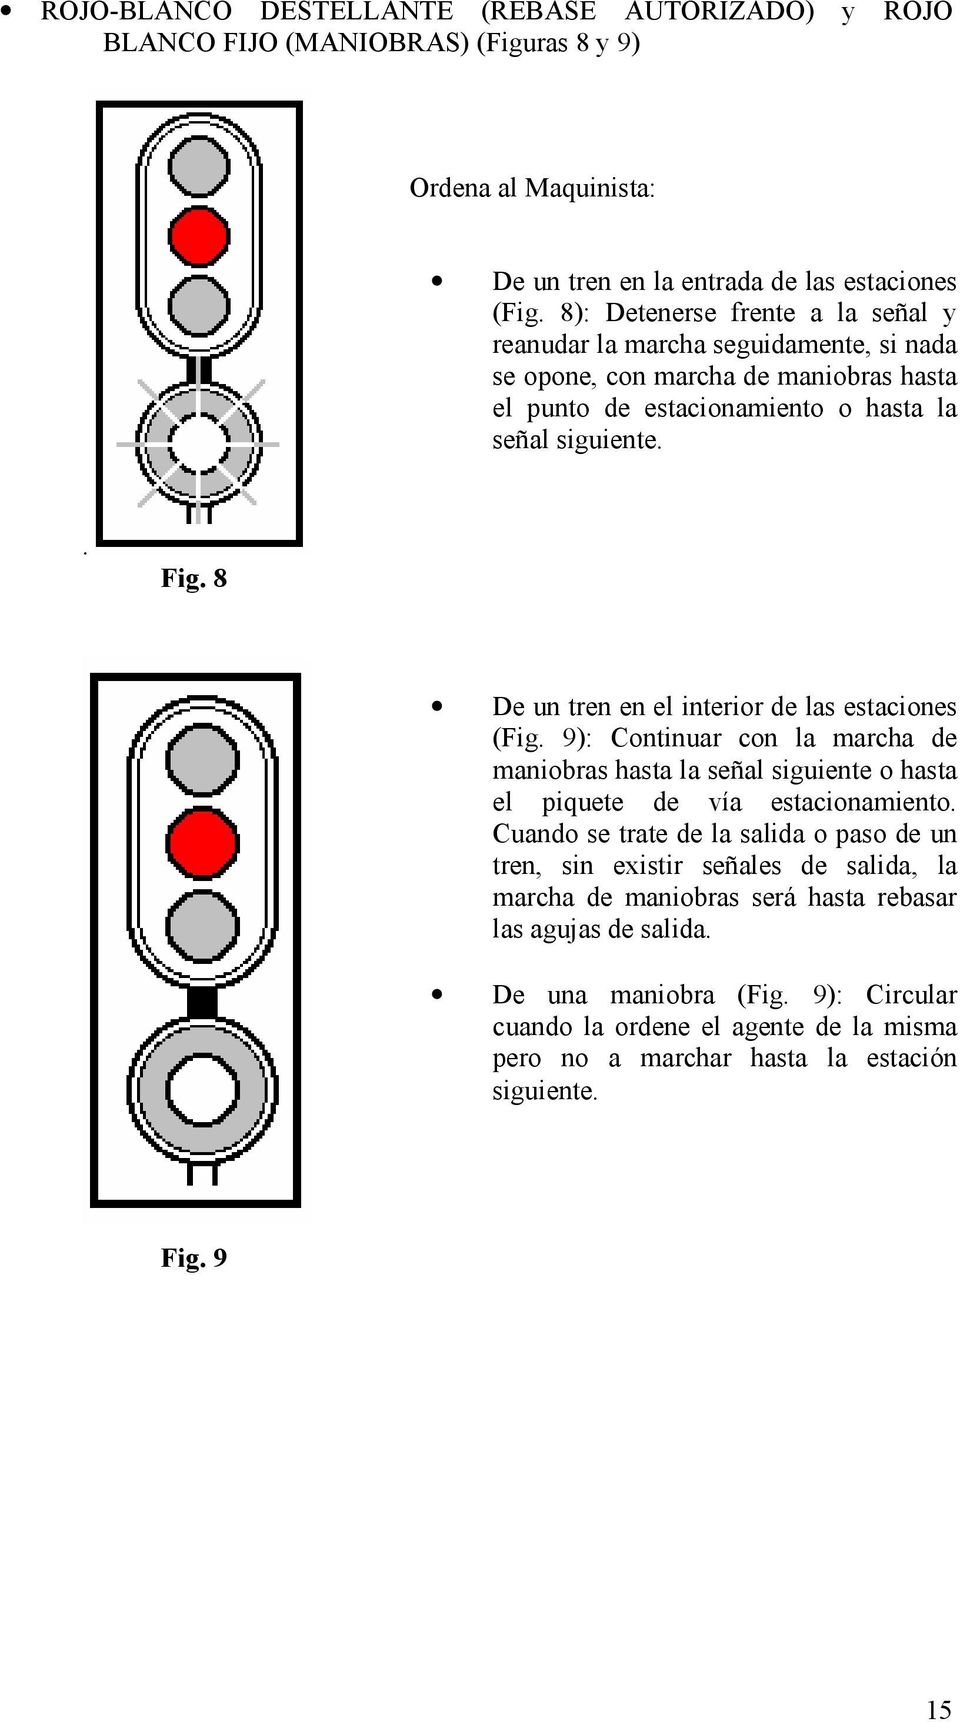 8 De un tren en el interior de las estaciones (Fig. 9): Continuar con la marcha de maniobras hasta la señal siguiente o hasta el piquete de vía estacionamiento.